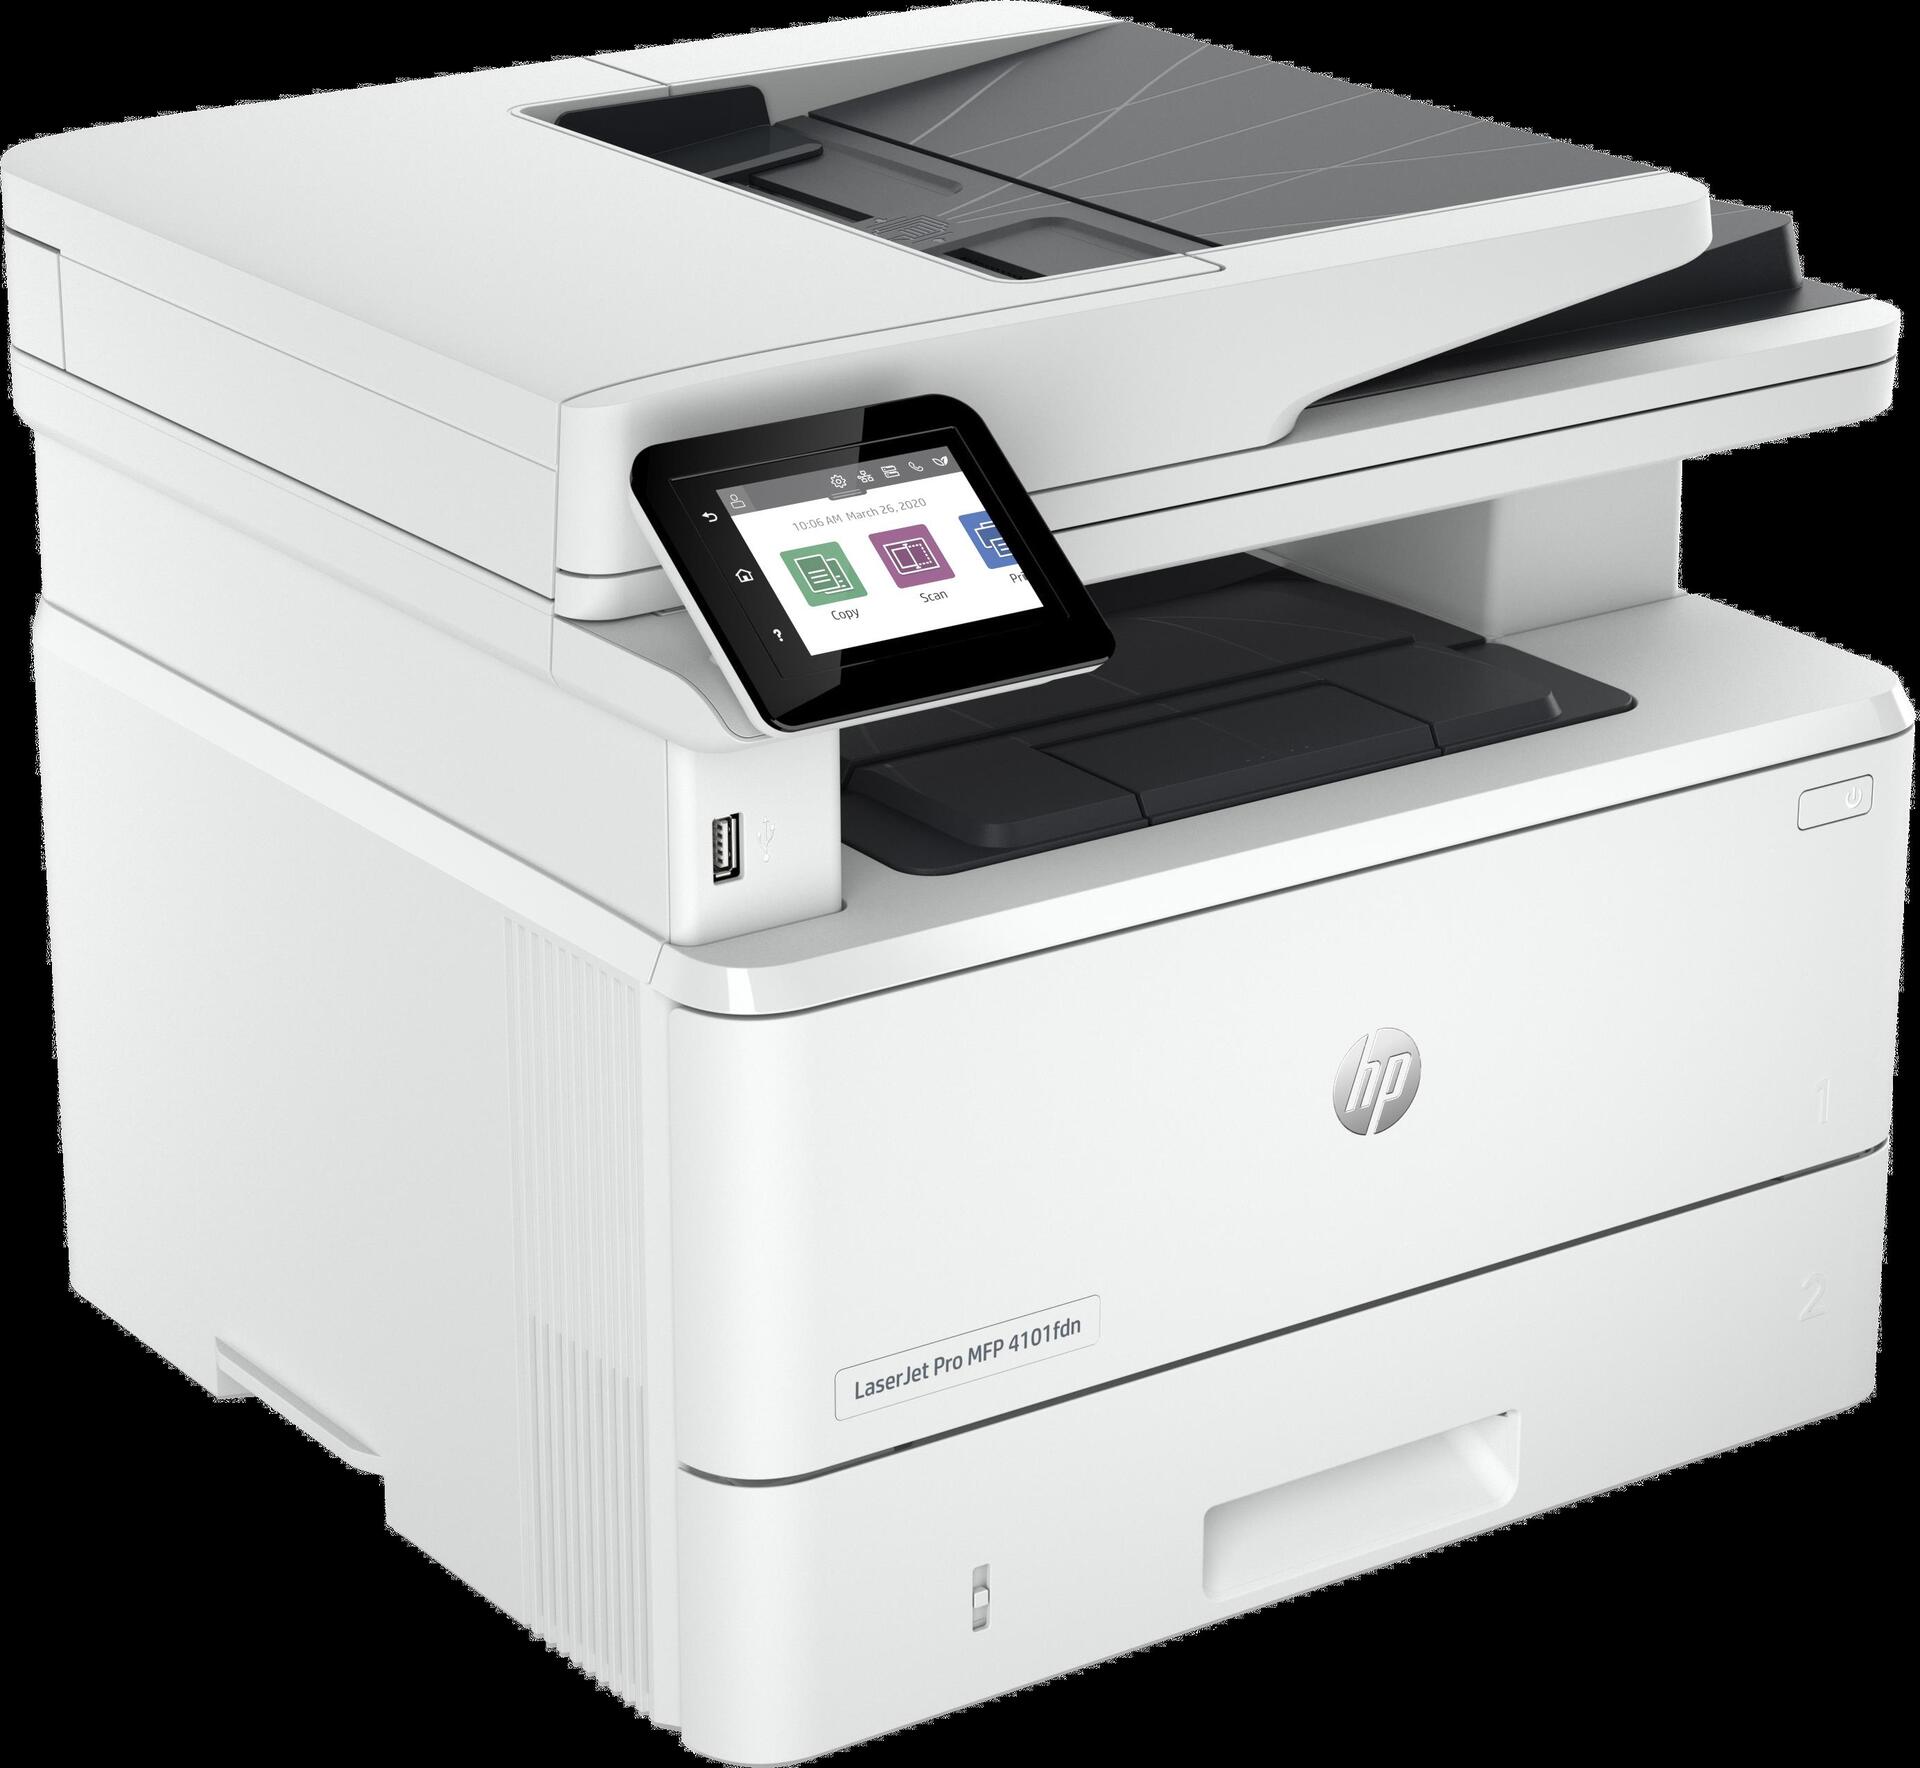 Image of HP LaserJet Pro MFP 4102fdw Drucker - Schwarzweiß - Drucker für Kleine und mittlere Unternehmen - Drucken - Kopieren - Scannen - Faxen - Wireless, geeignet für Instant Ink, Drucken vom Smartphone oder Tablet, automatische Dokumentenzuführung, beidseitiger